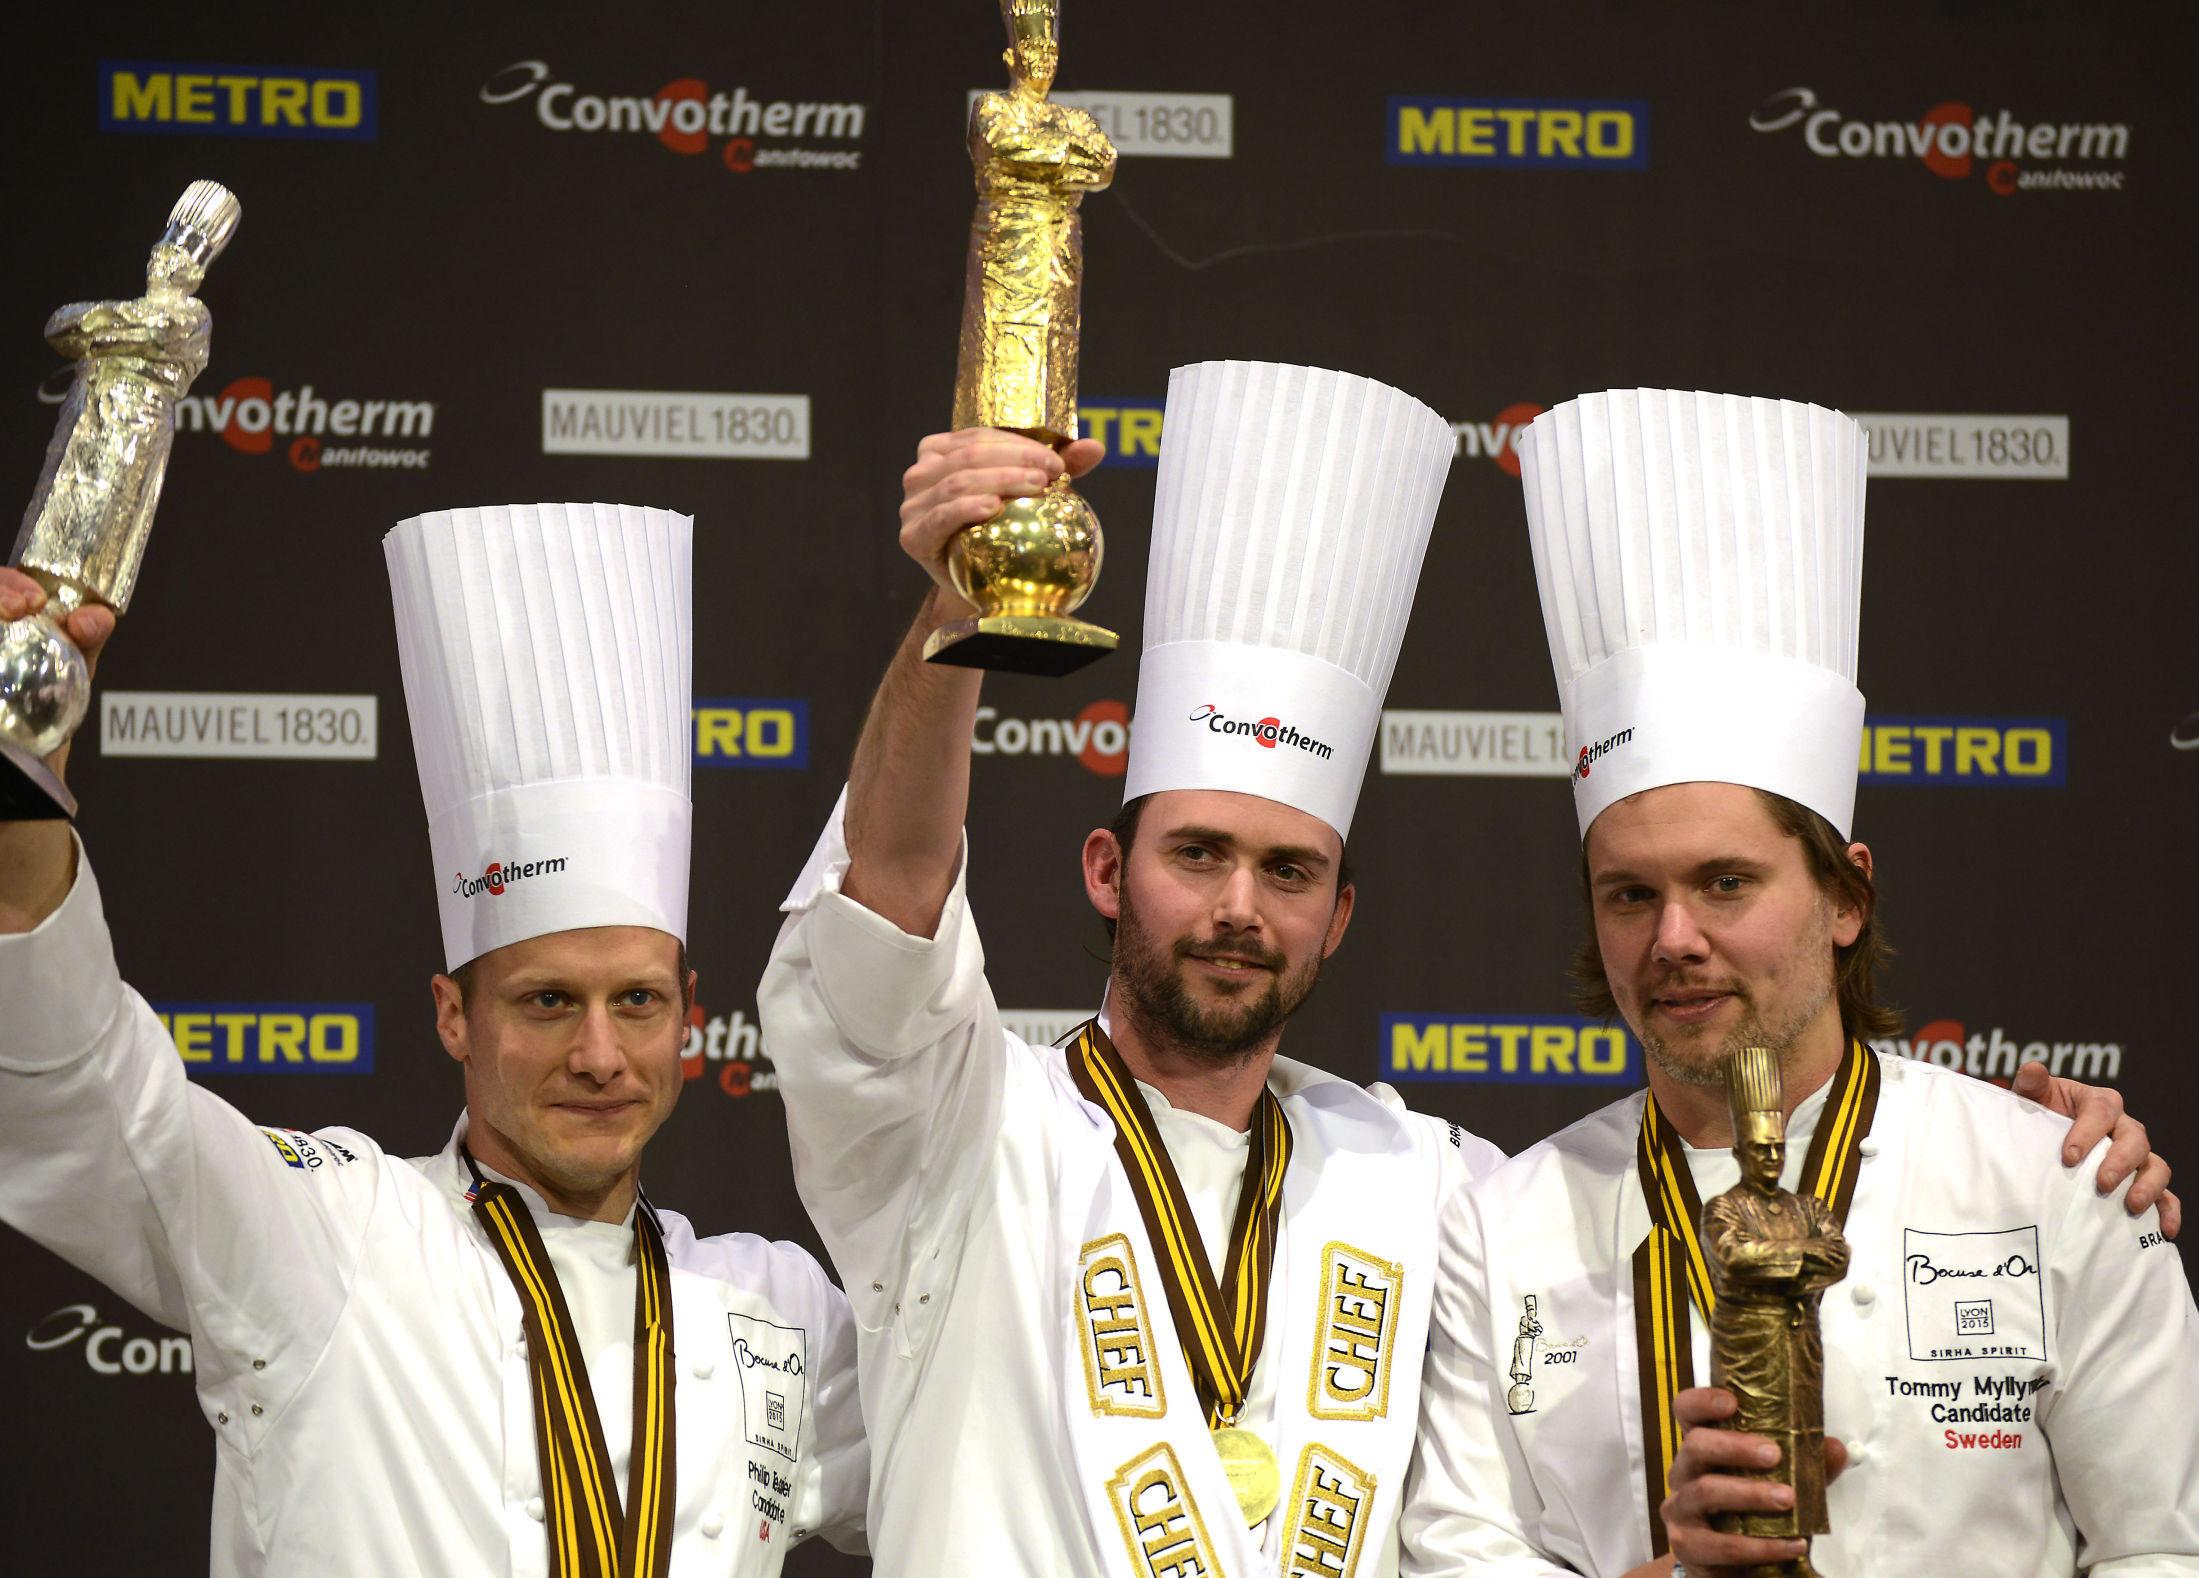 VERDENS BESTE: Ørjan Johannessen fikk i dag den største utmerkelsen en kokk kan drømme om, han vant Bocuse d'Or 2015 og er dermed verdens beste kokk. Foto: Impulsfoto.